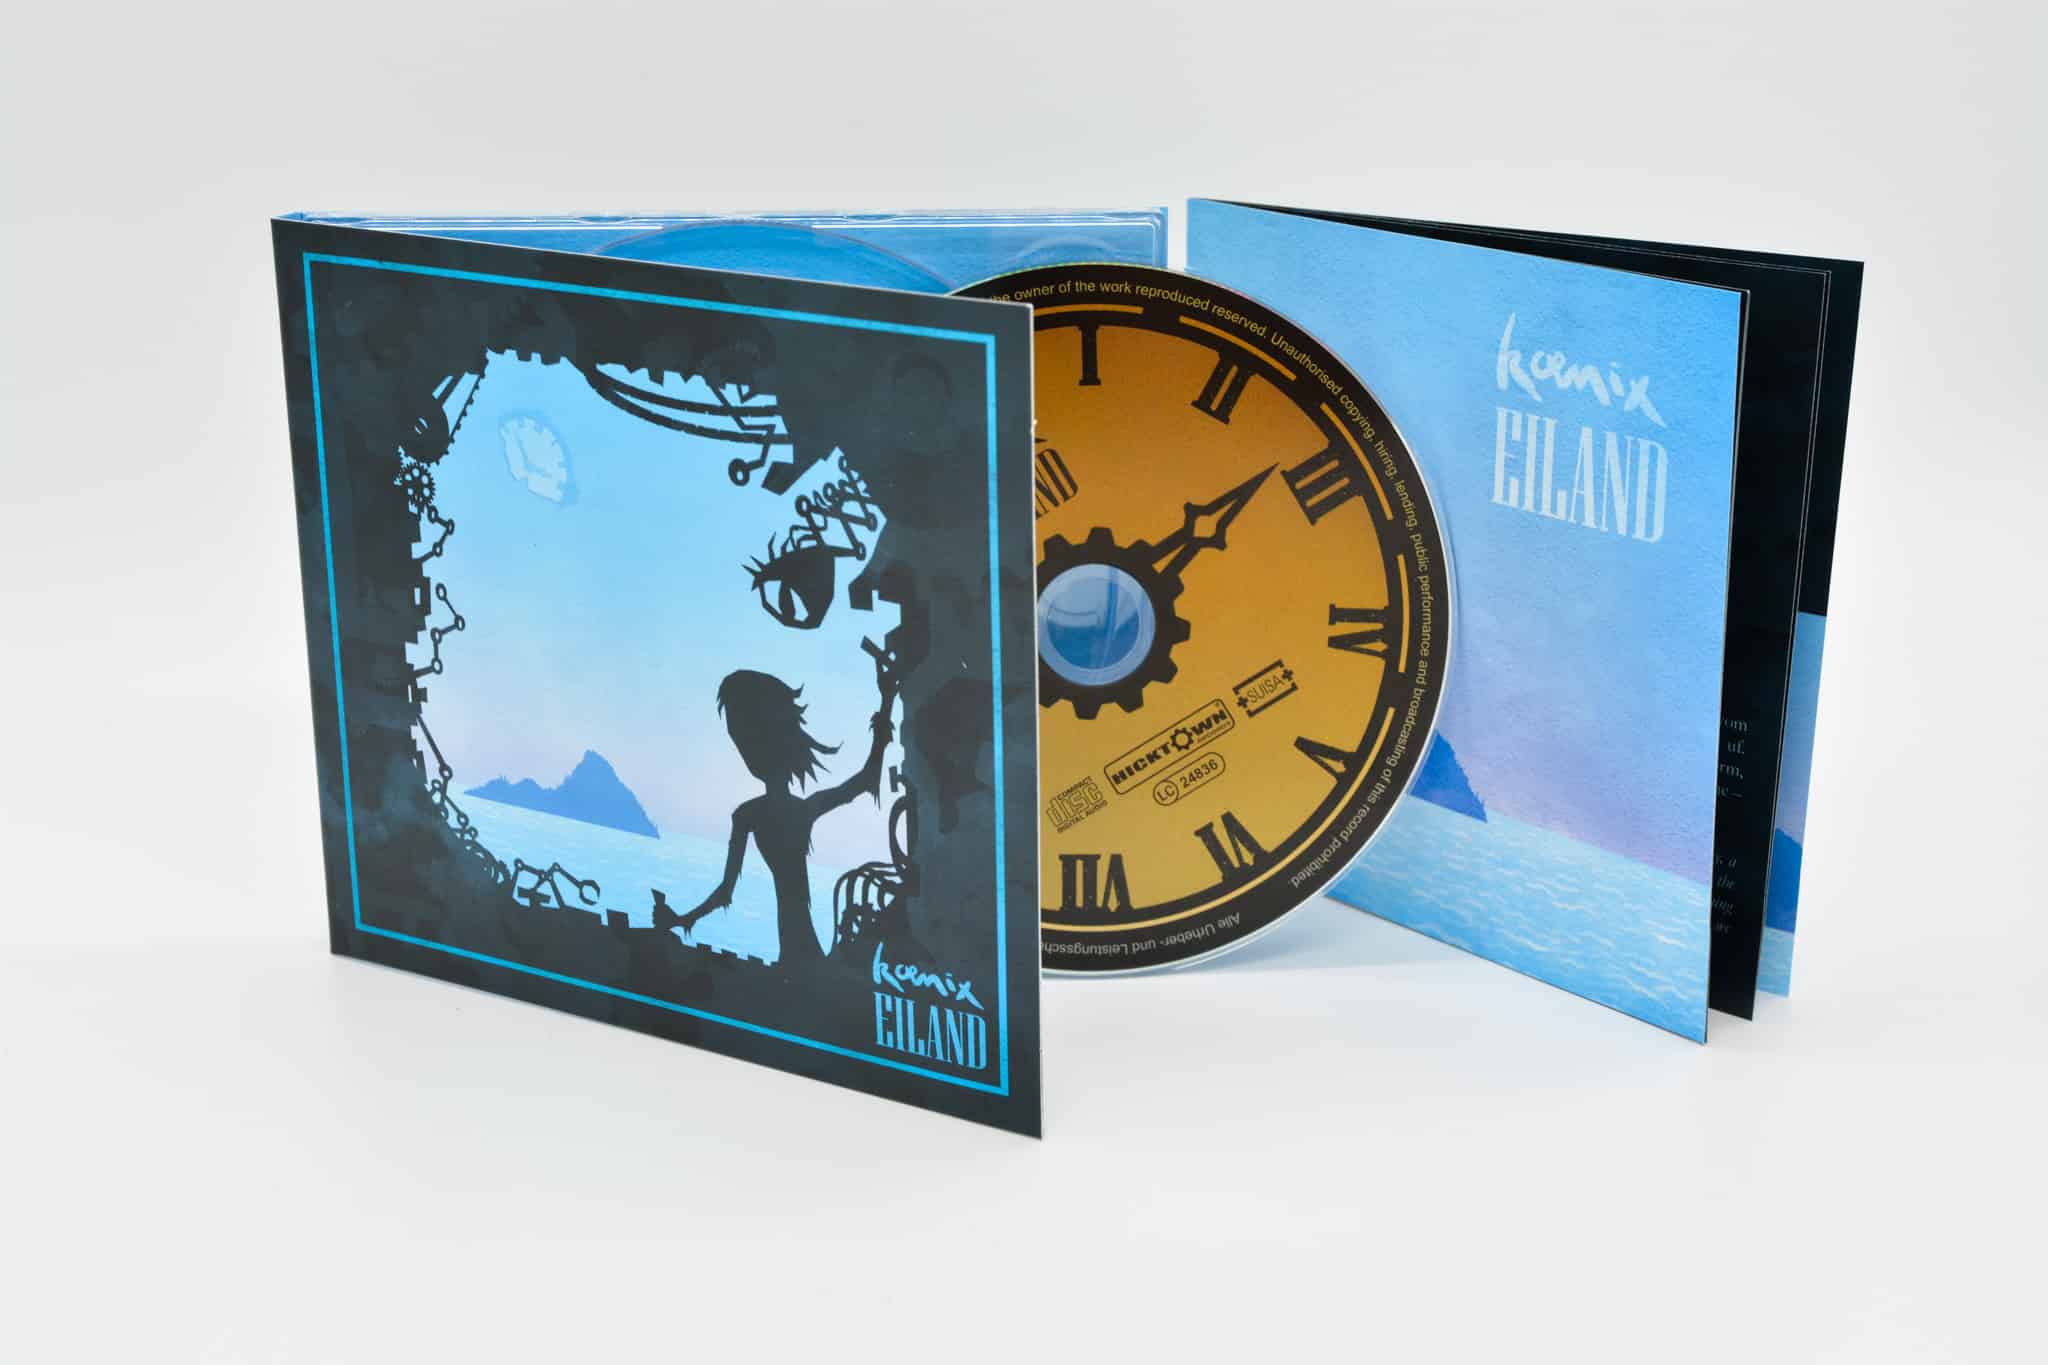 Koenix - Eiland CD (Front) - Hicktown Records ® Das Tonstudio und Musiklabel